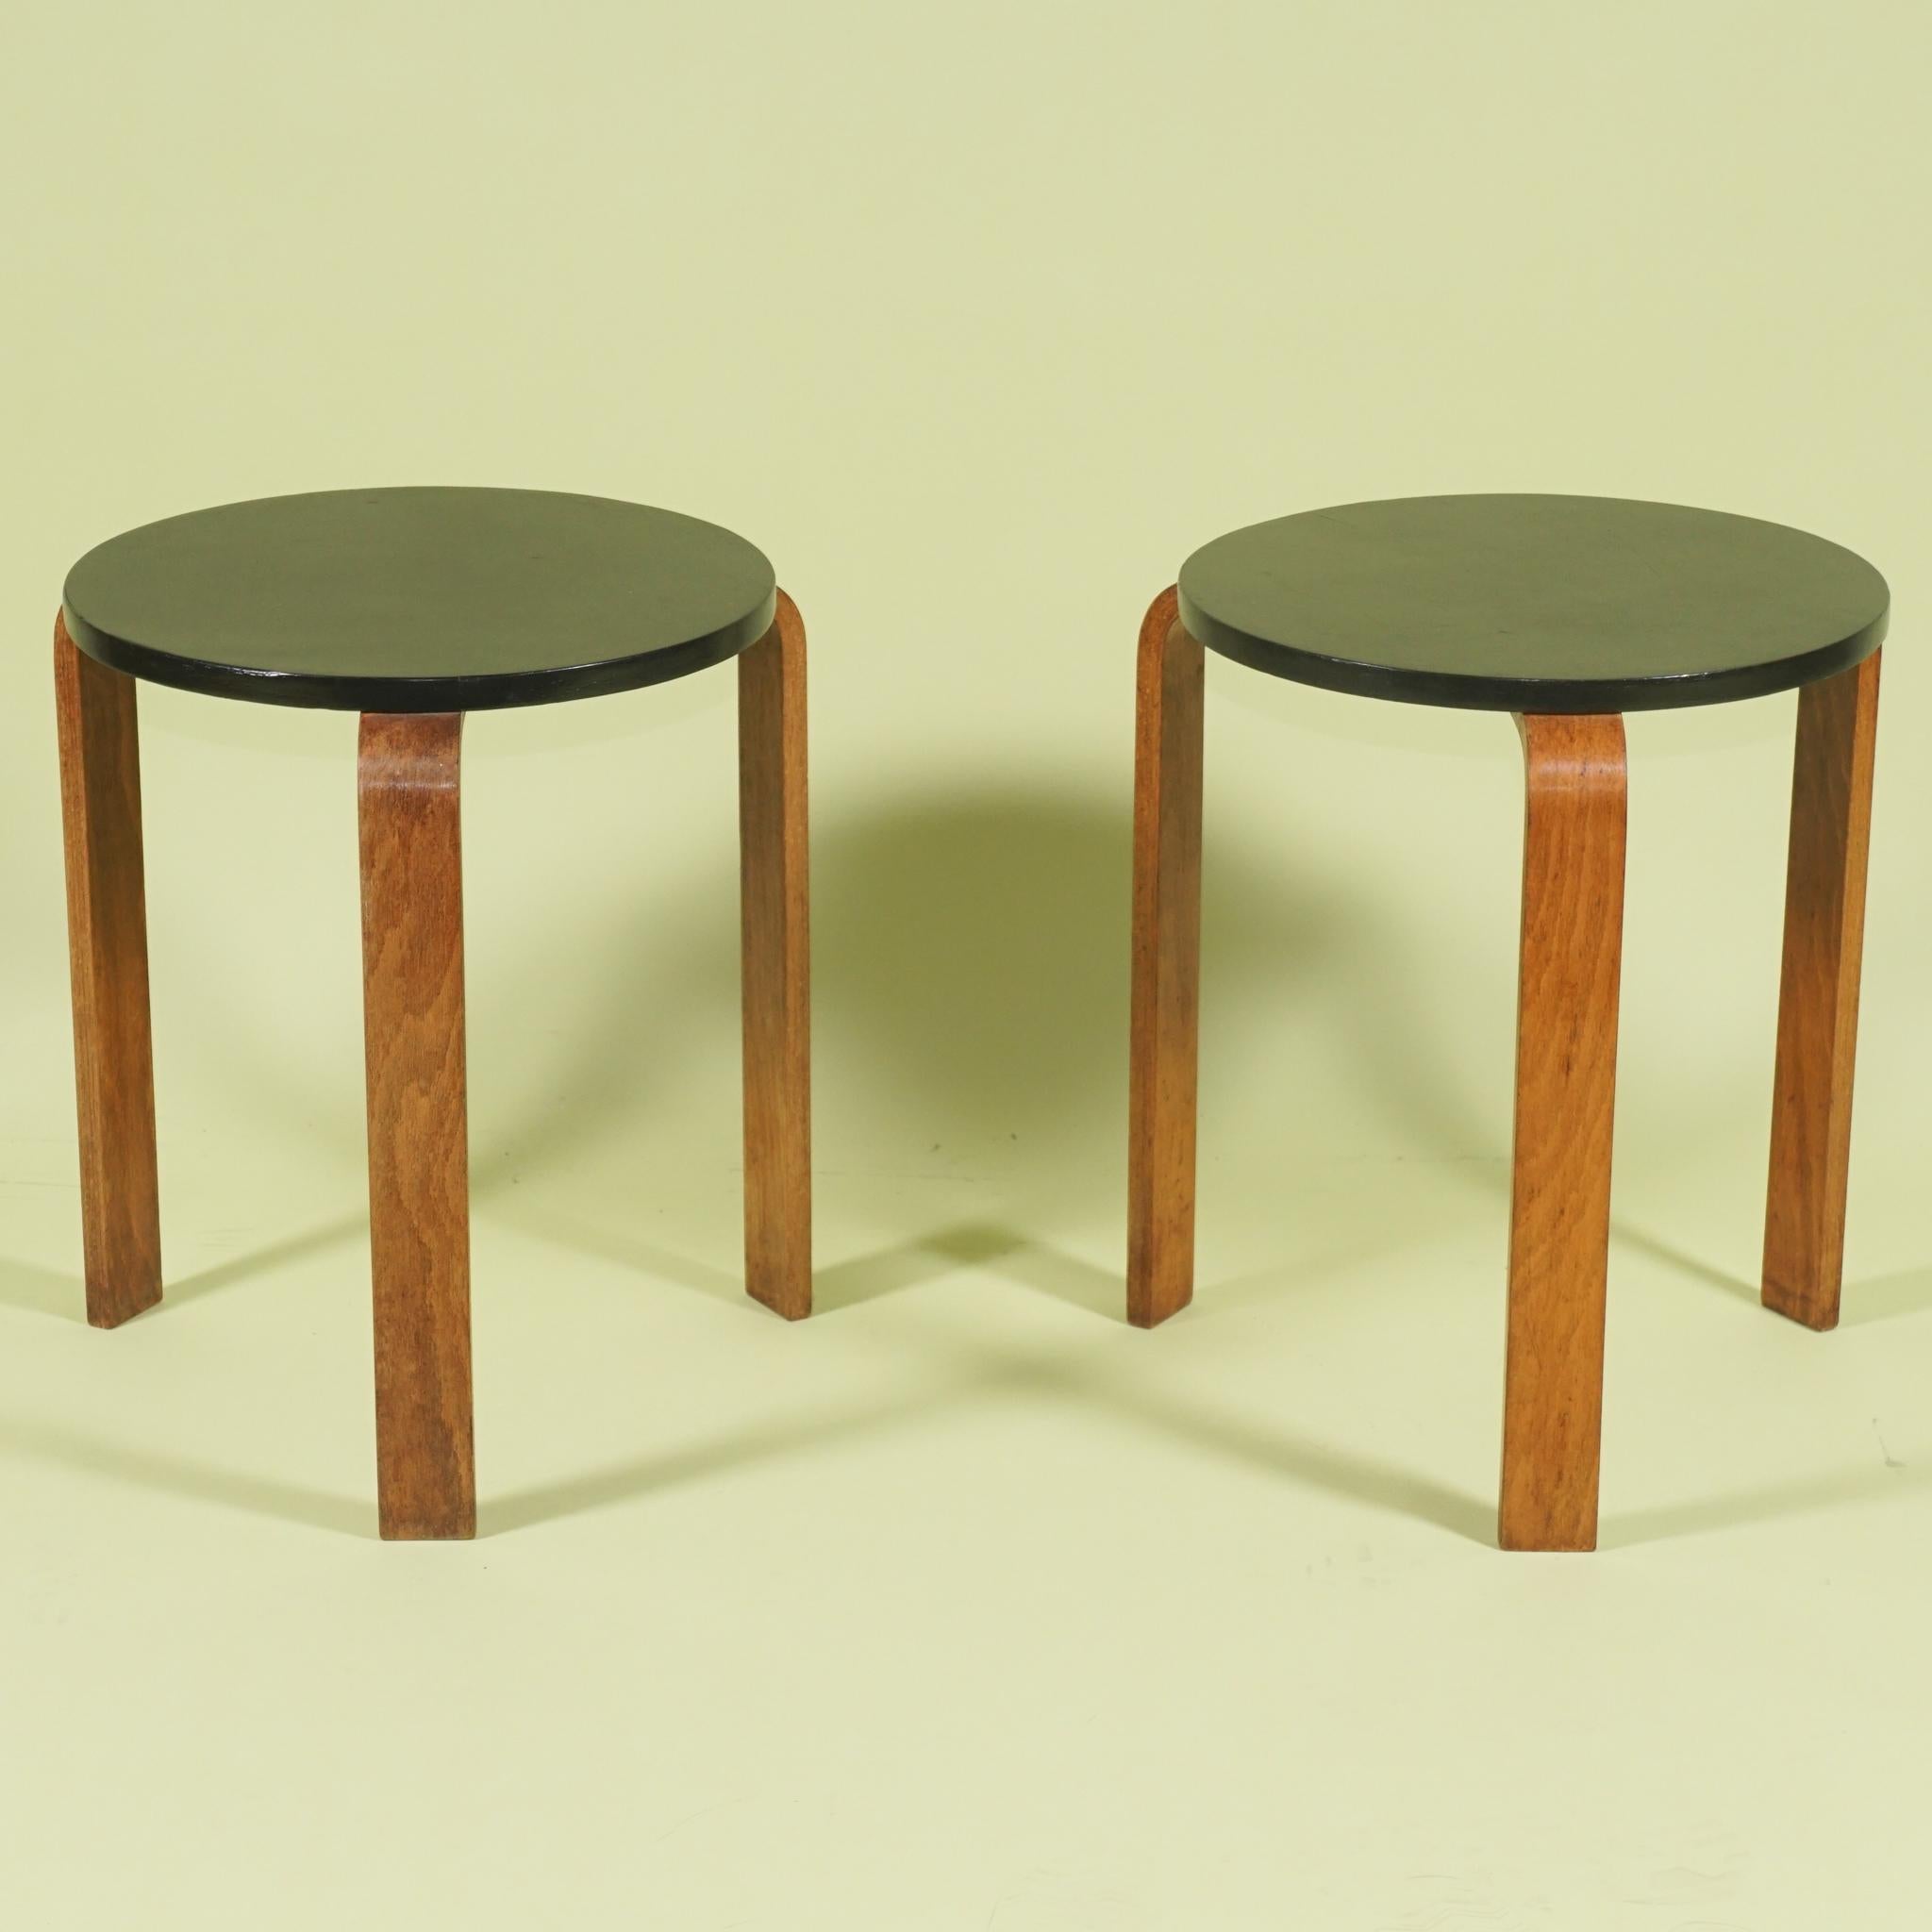 Cette paire de tabourets bas ou tables vintage à trois pieds du designer Alvar Aalto a été présentée pour la première fois dans les années 1930. Toutes deux fabriquées vers 1955 et ayant manifestement toujours vécu leur vie ensemble, elles sont